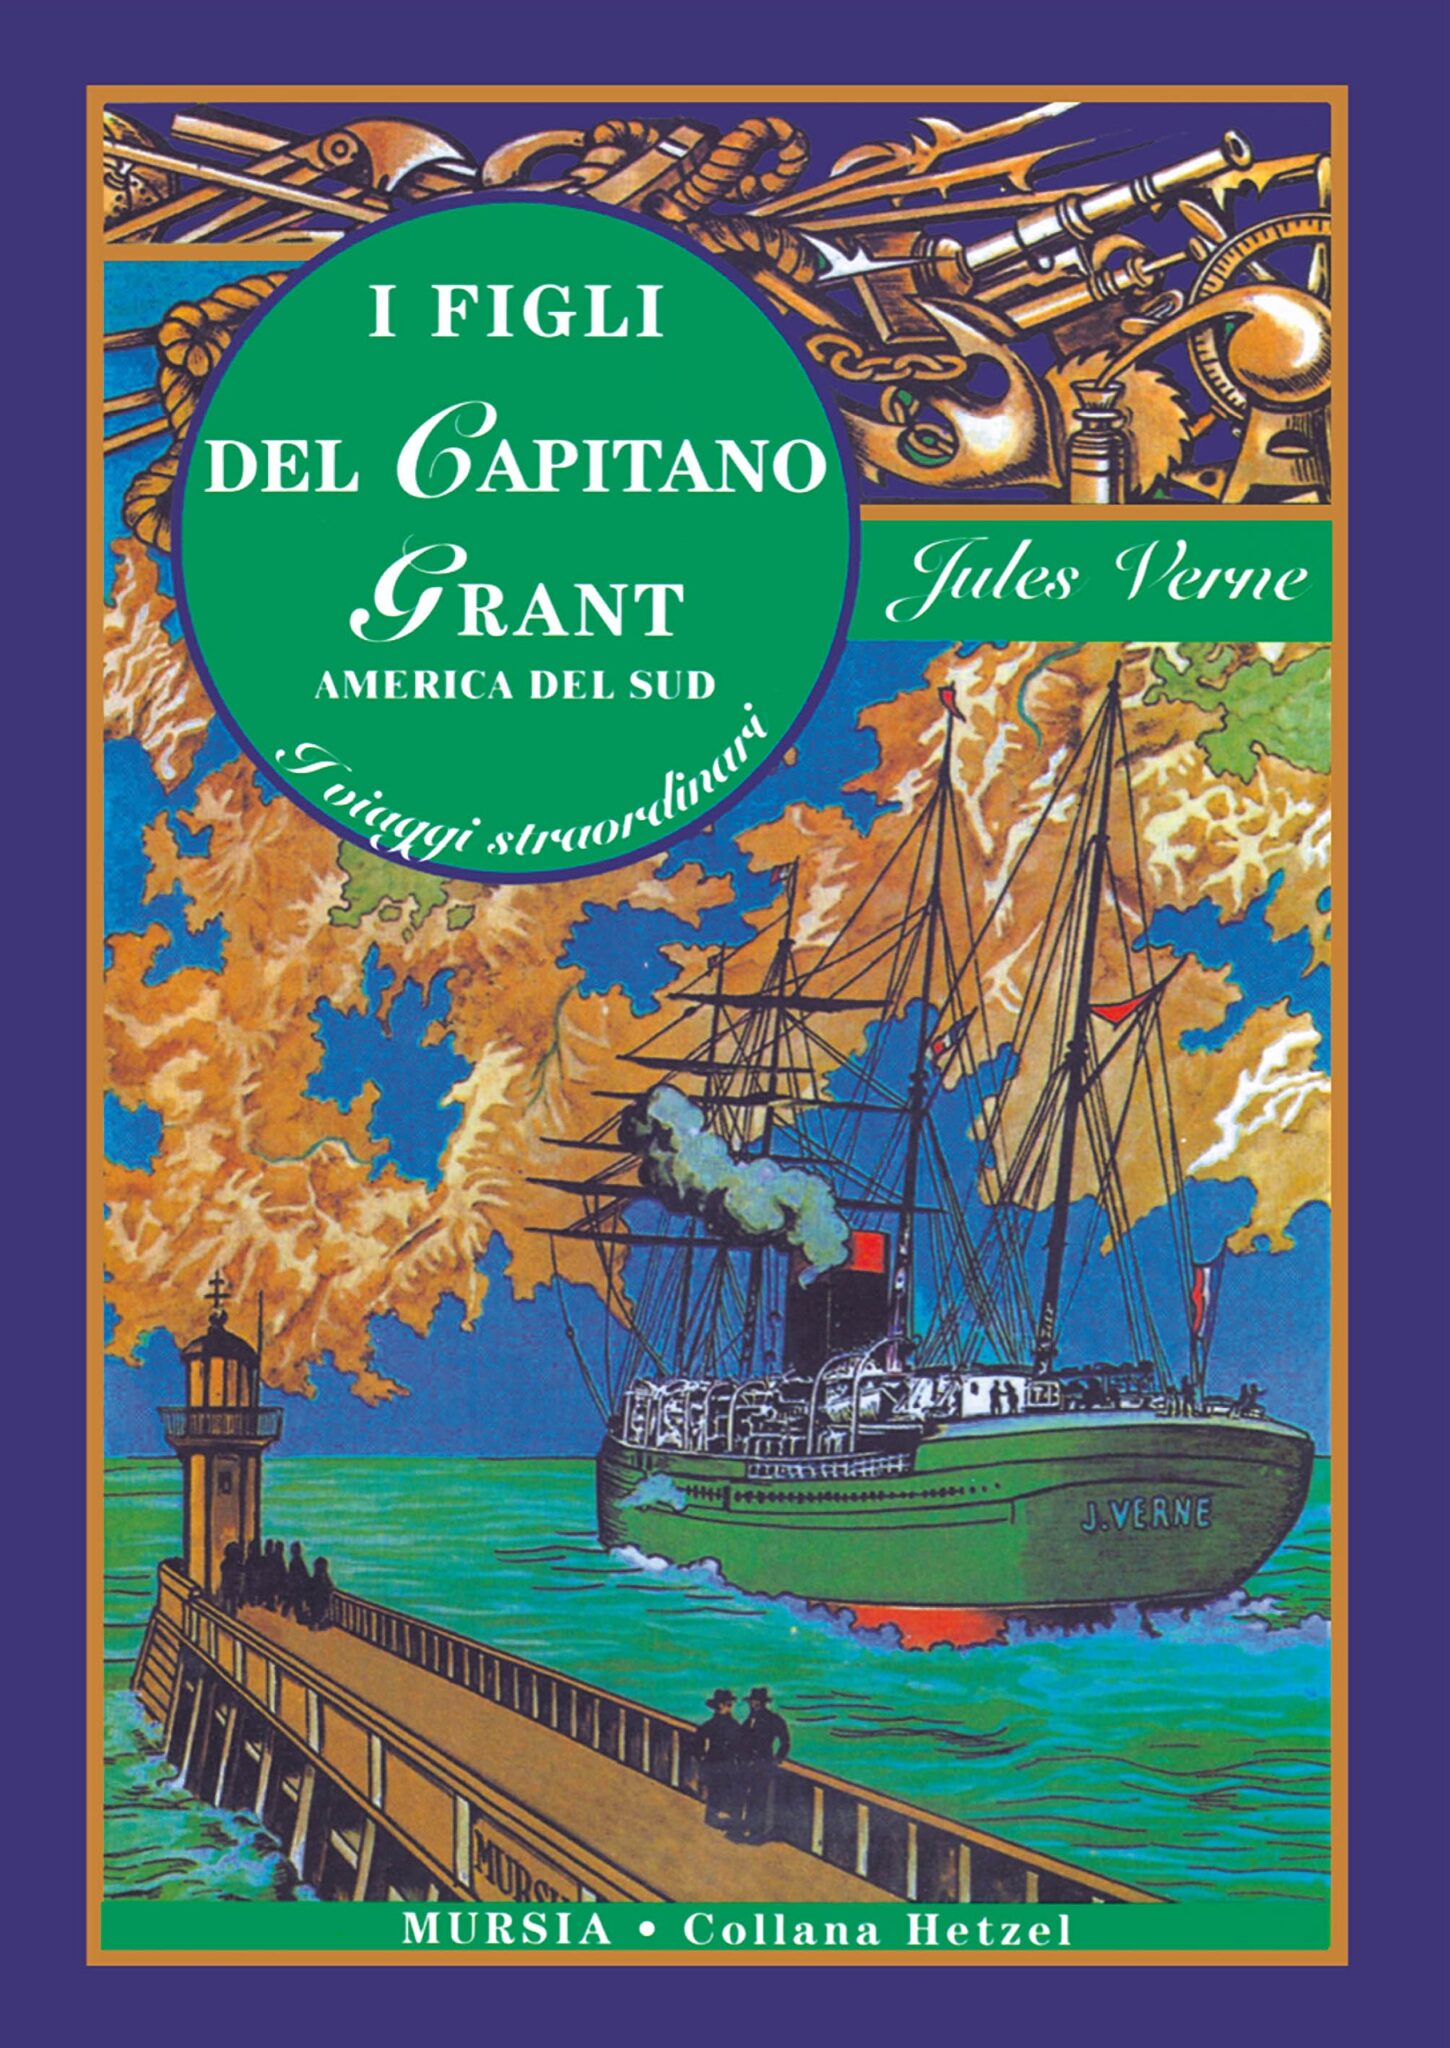 Il libro I figli del capitano Grant di Jules Verne